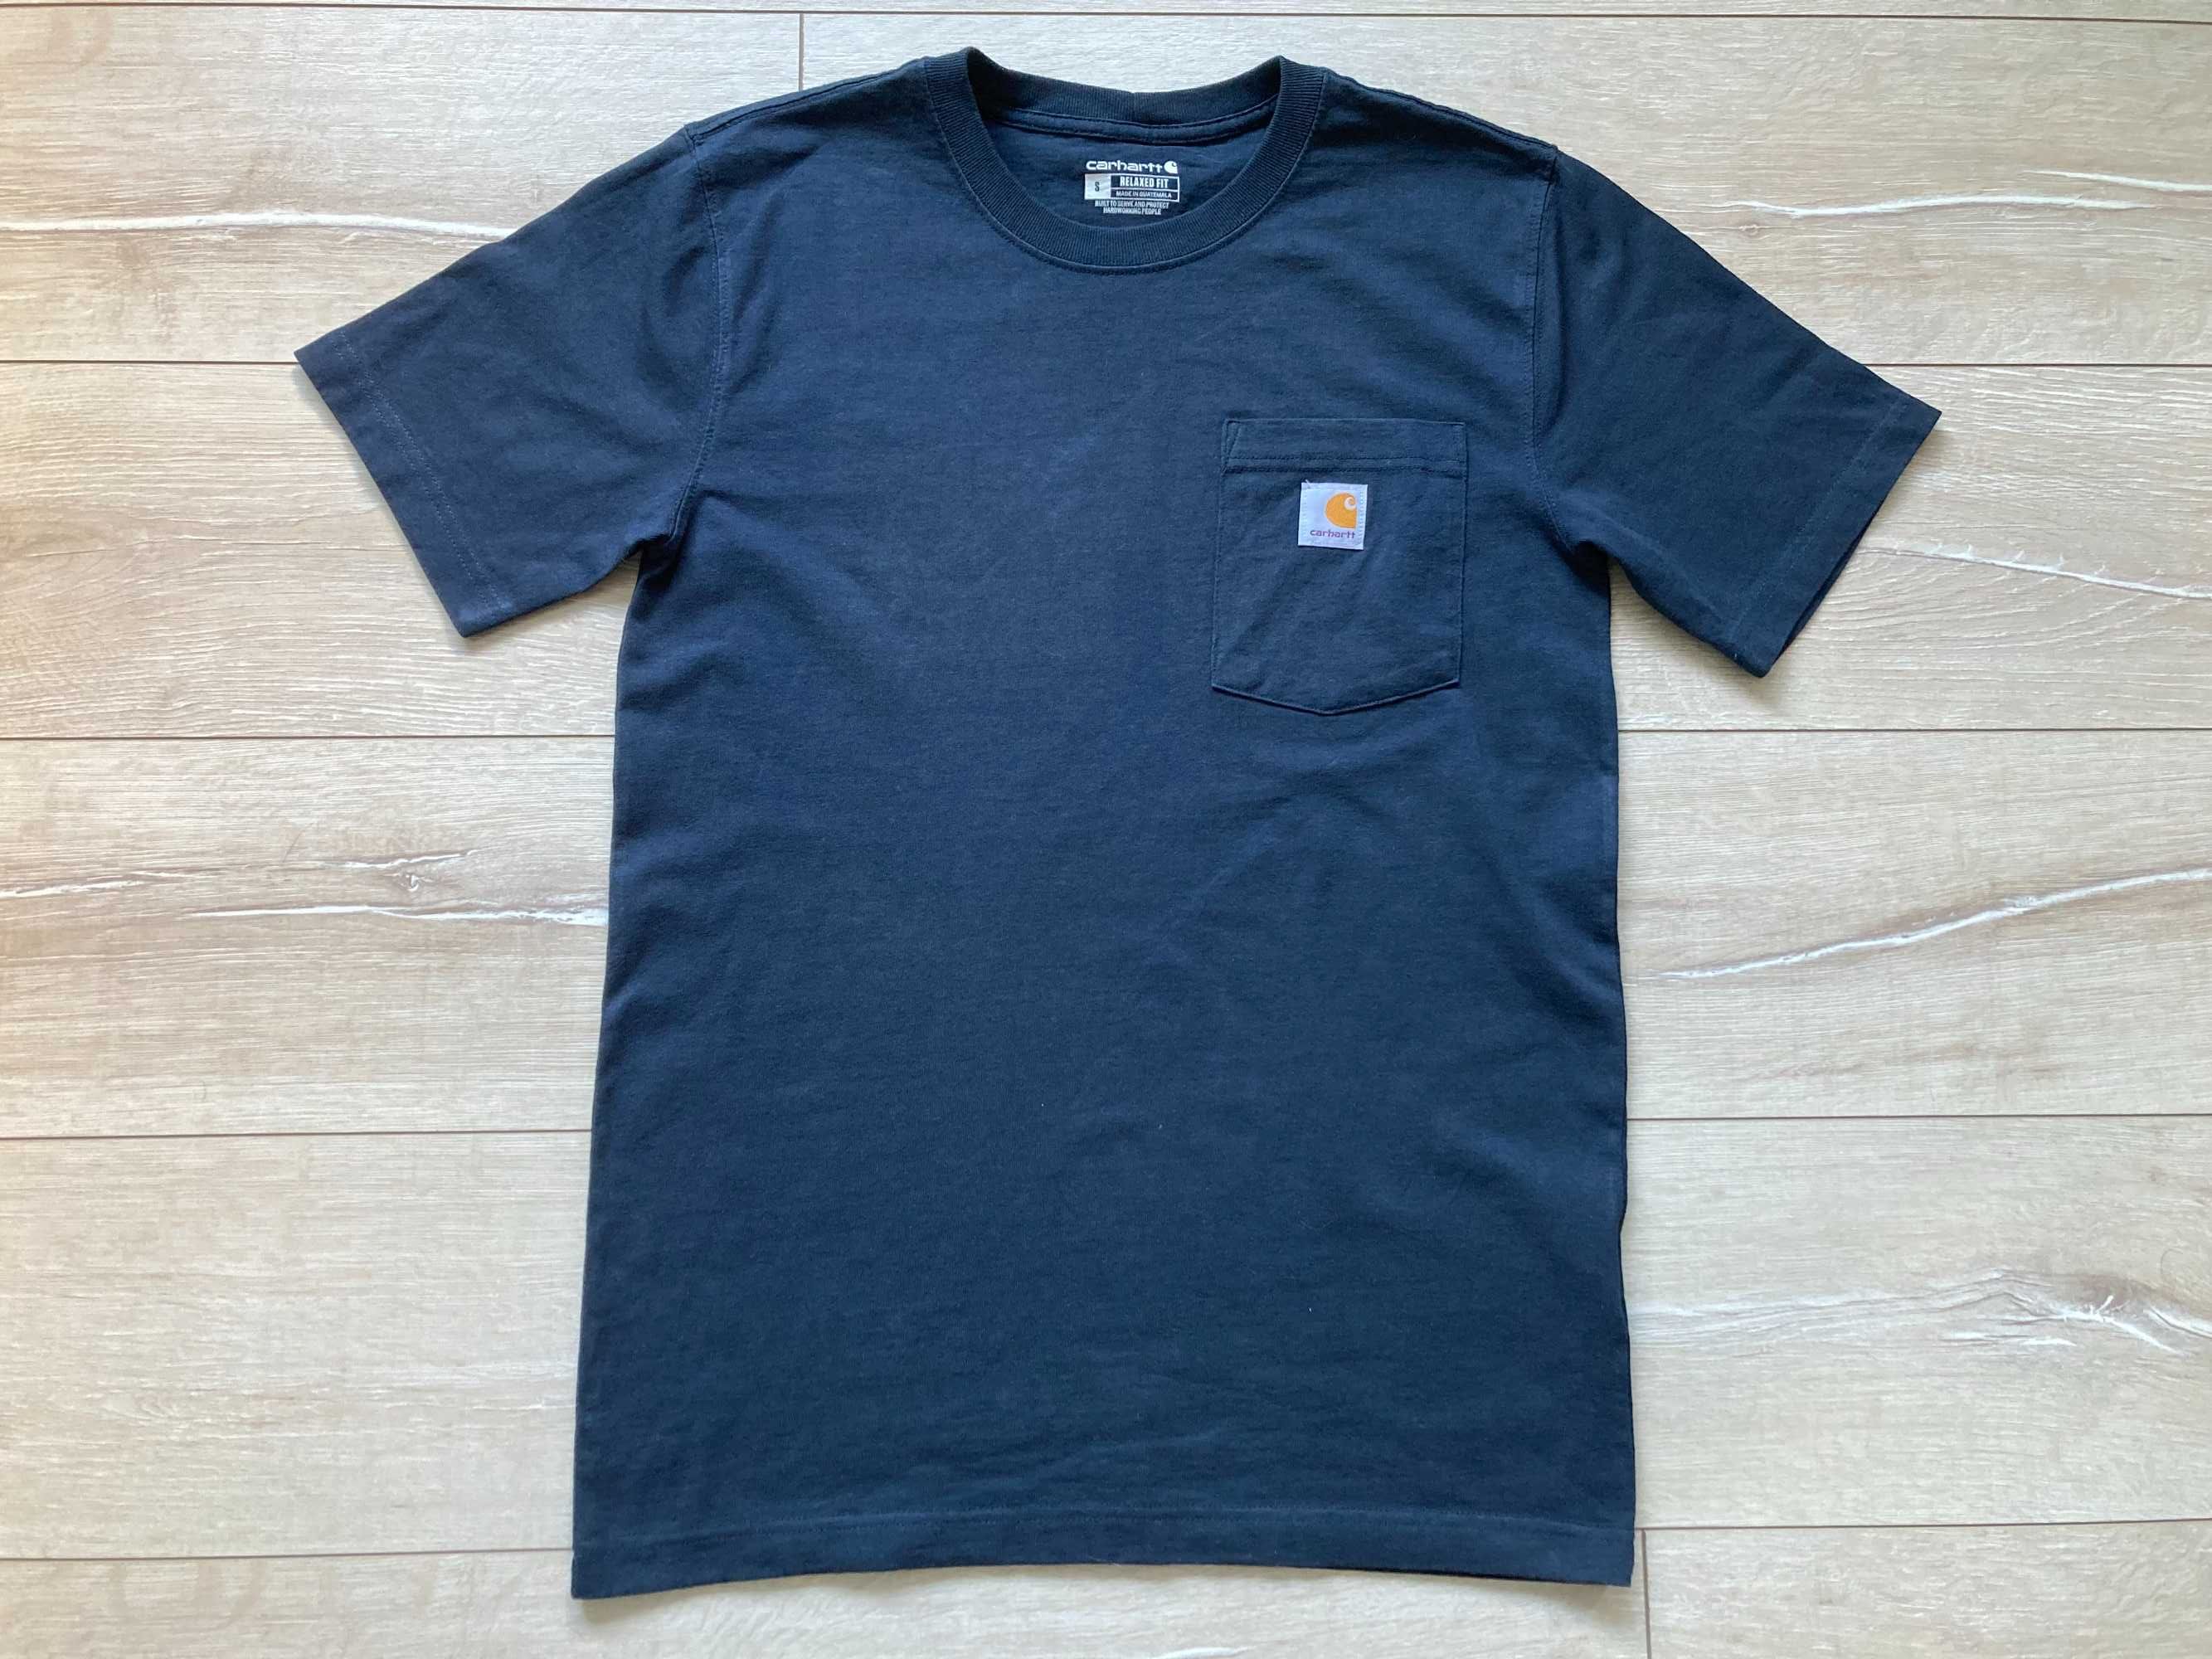 Кархарт Carhartt Relaxed Fit Pocket t shirt мъжка тениска размер S